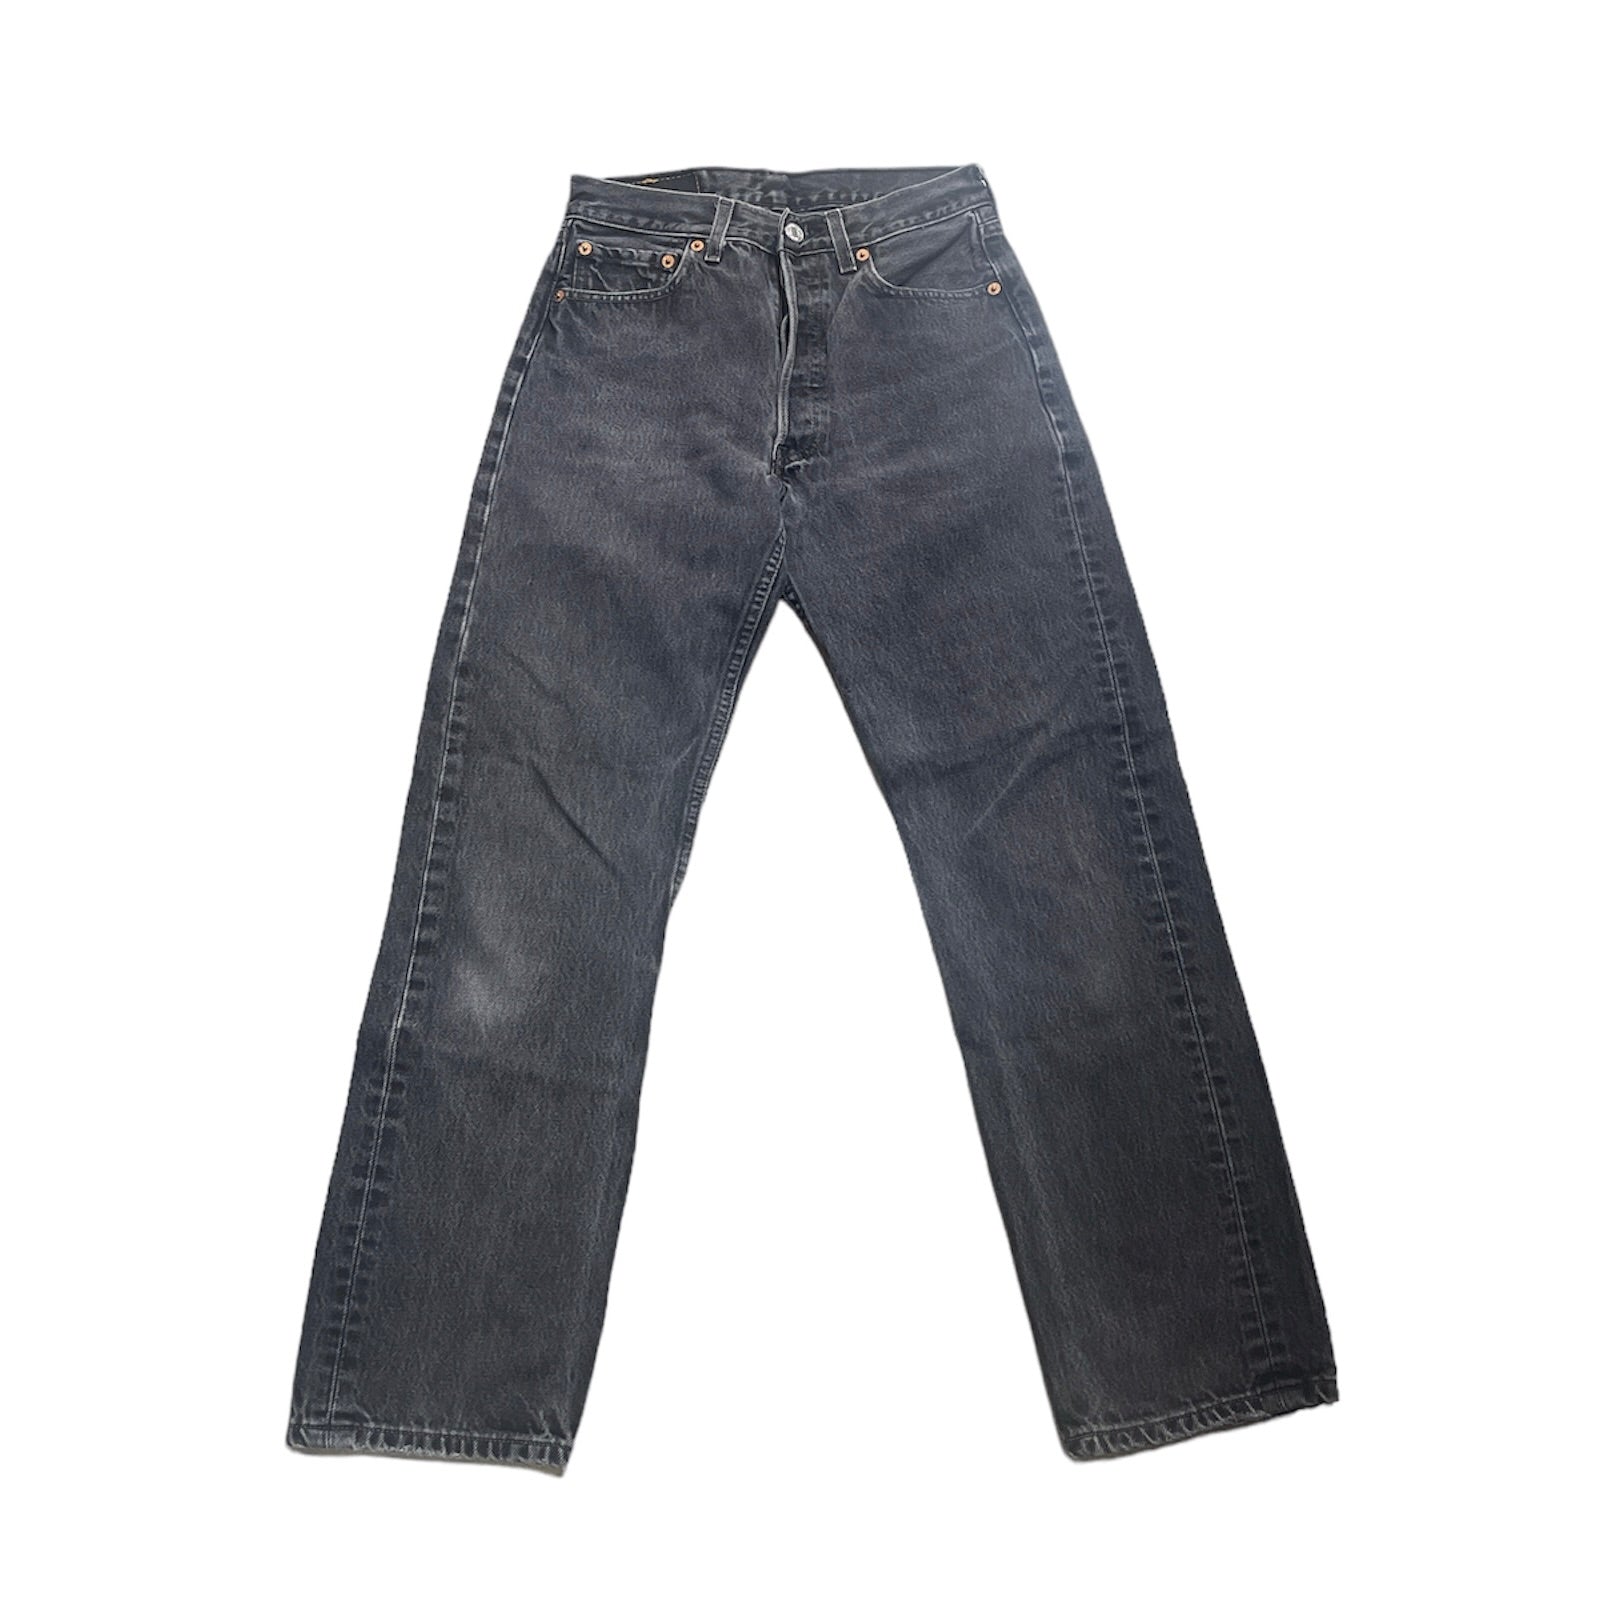 Vintage Levis 501 Grey Jeans (W28/L30)